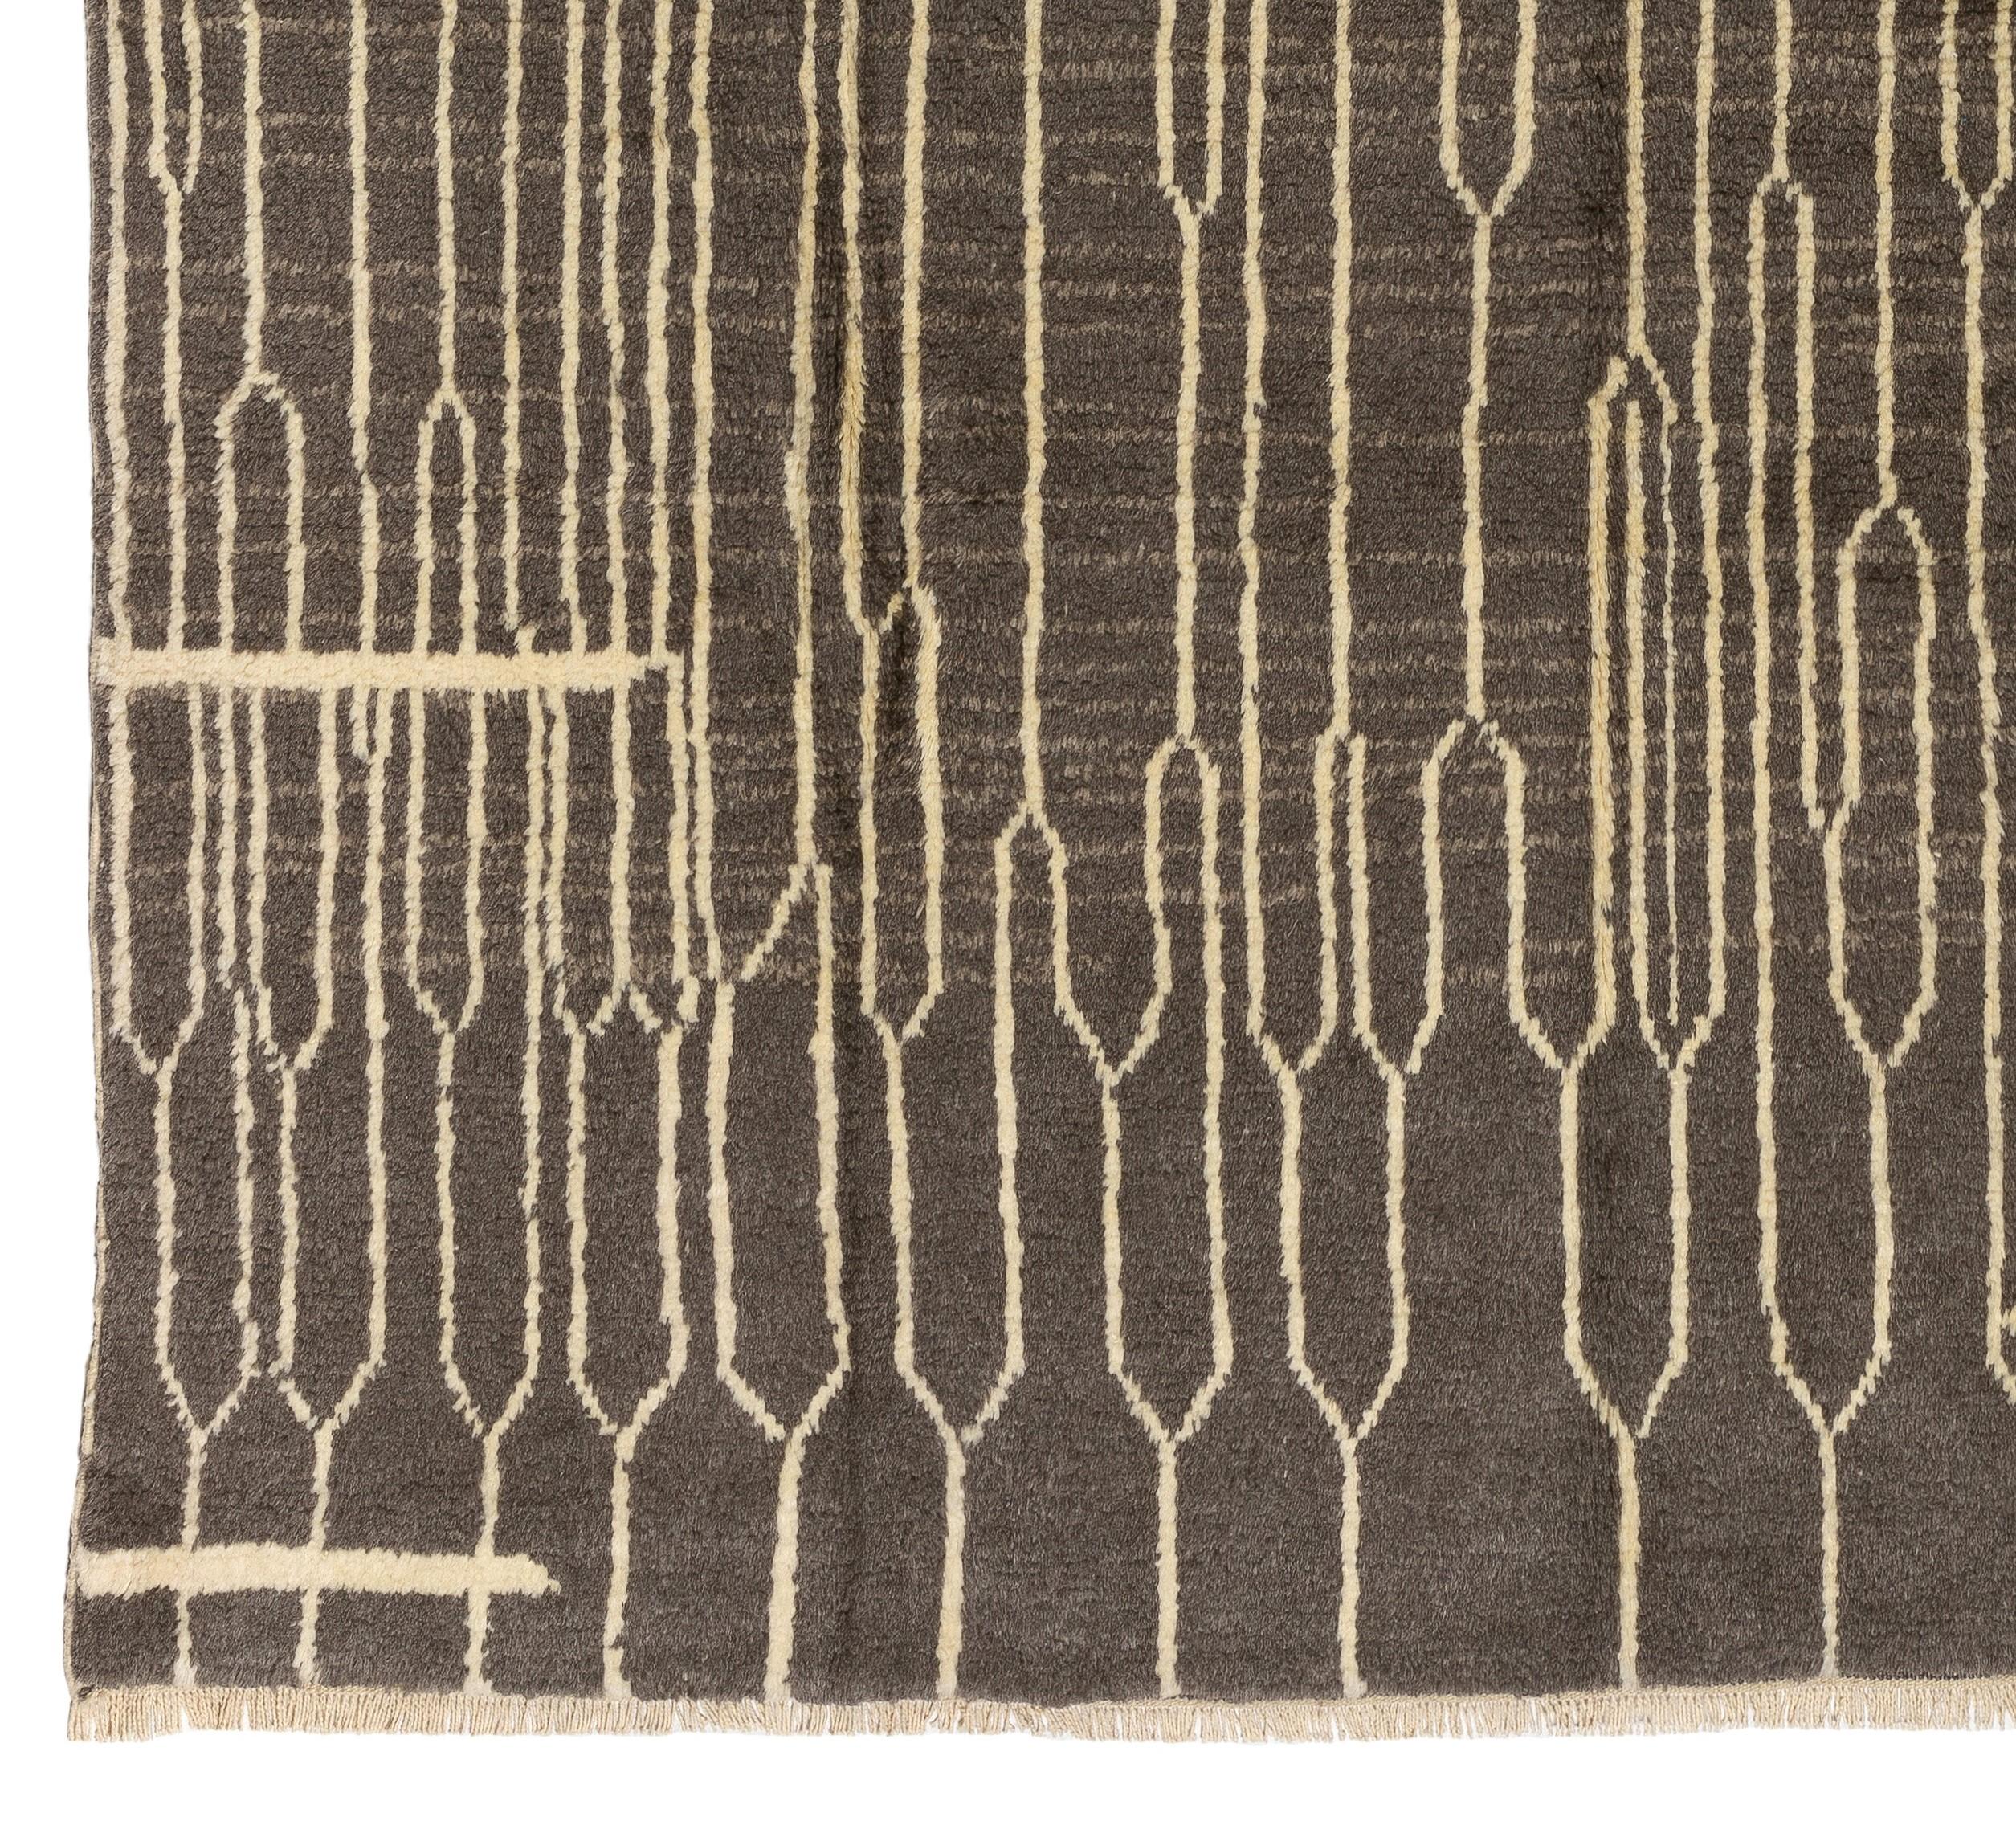 Ein handgeknüpfter moderner Teppich mit weichem, kuscheligem Wollflor auf Wollbasis. Maße: 8.2 x 10.1 Ft -

Der Teppich ist so erhältlich, wie er gesehen wird, oder kann auf Wunsch innerhalb von sechs Wochen in einer anderen Größe, Farbkombination